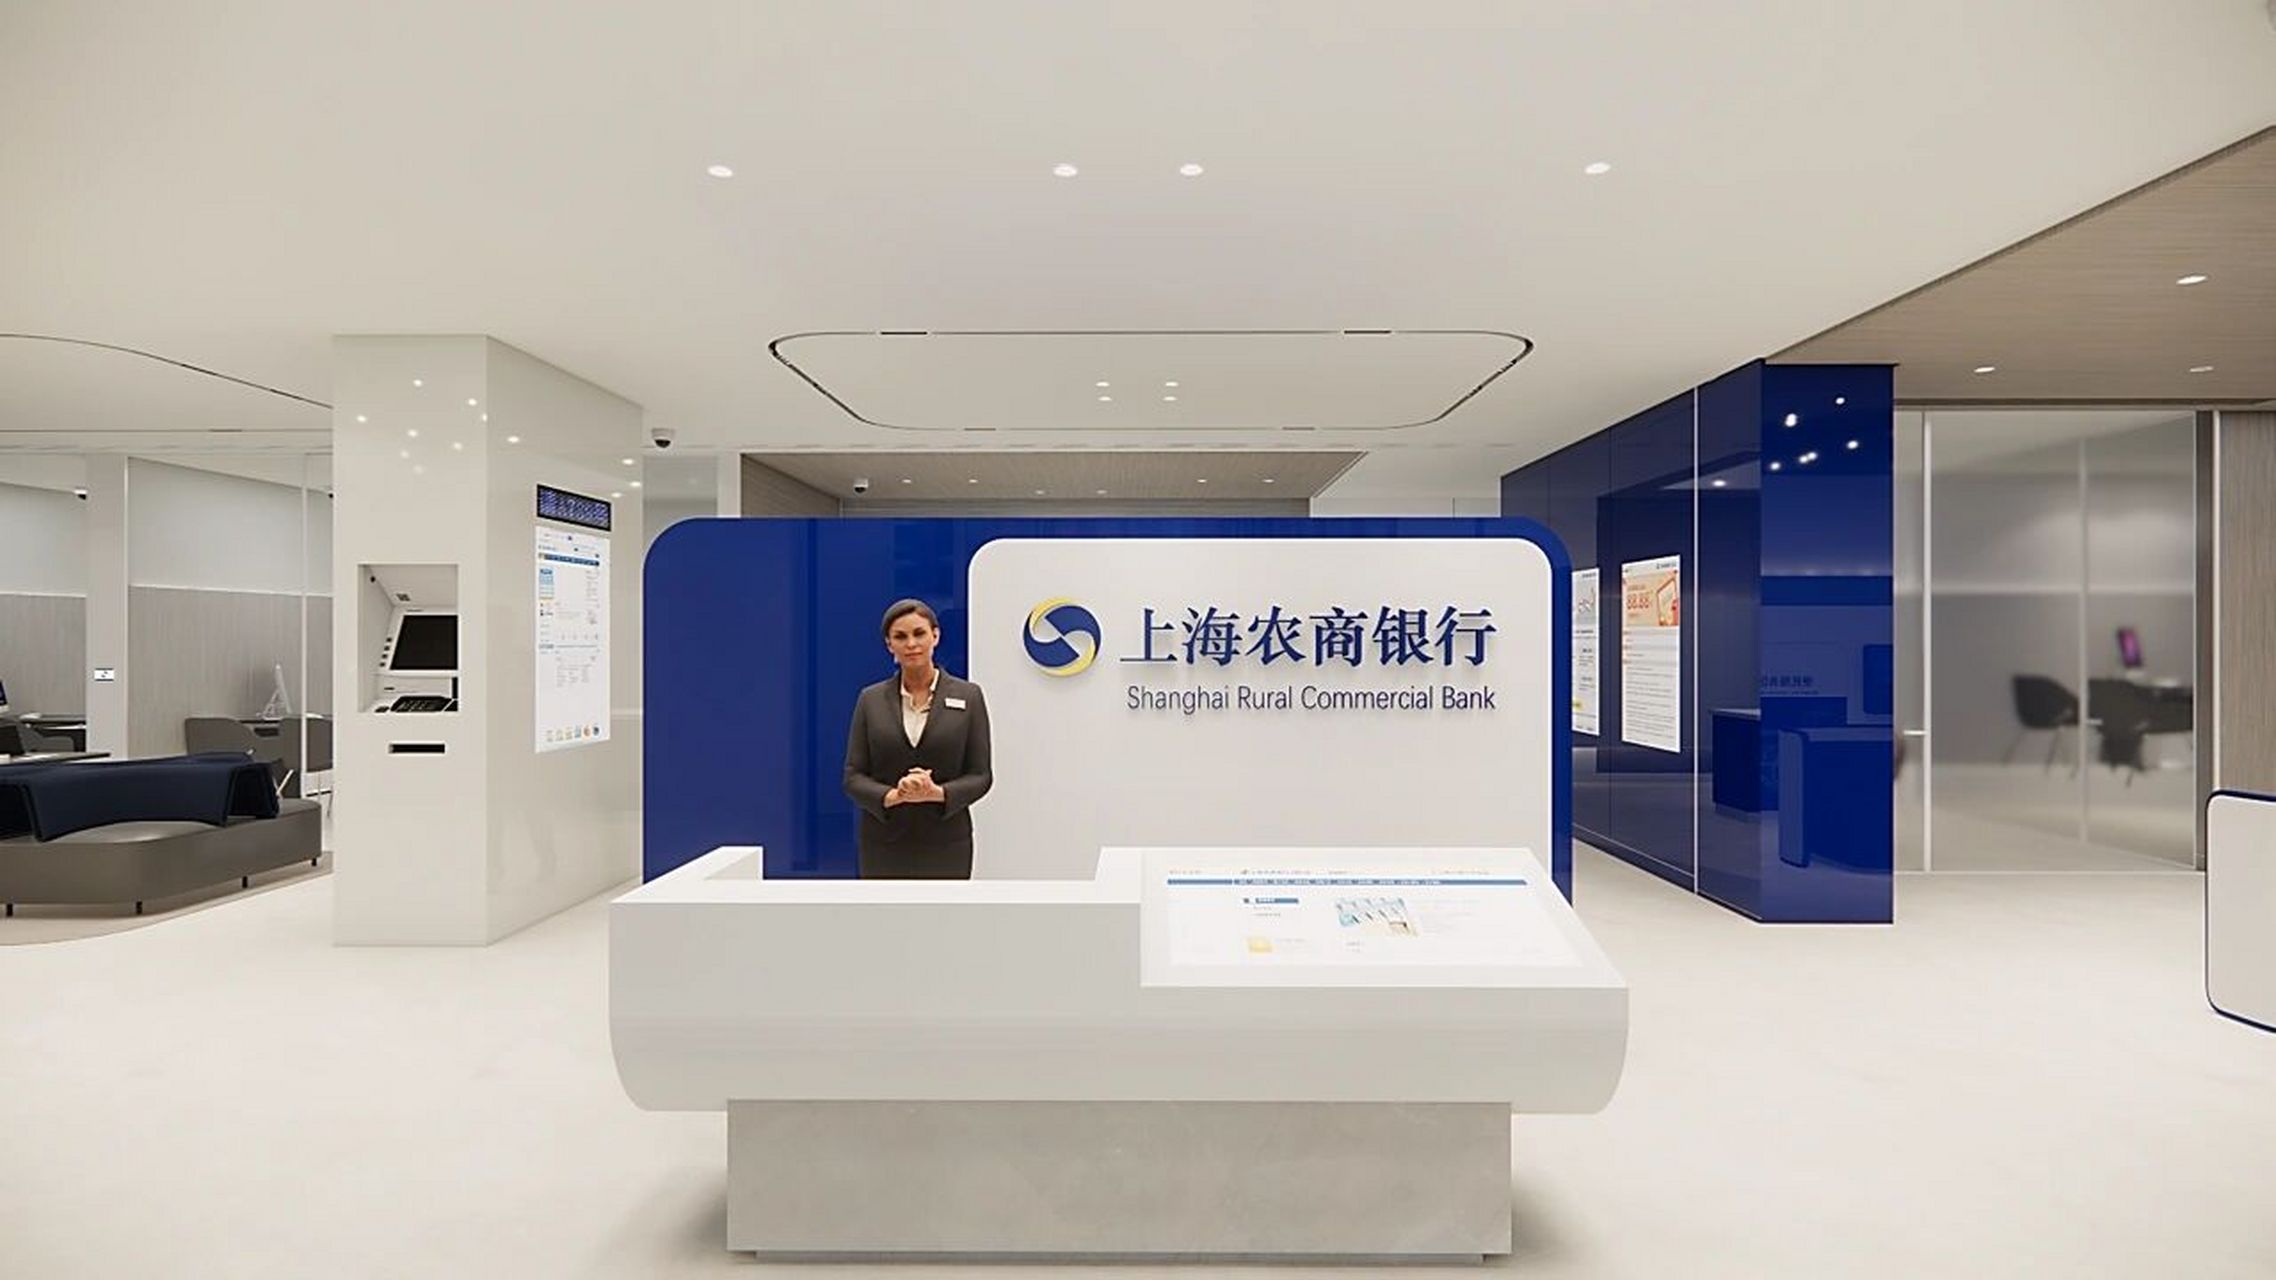 上海农商银行营业网点设计赏析 银行网点的布局应最大限度保证员工